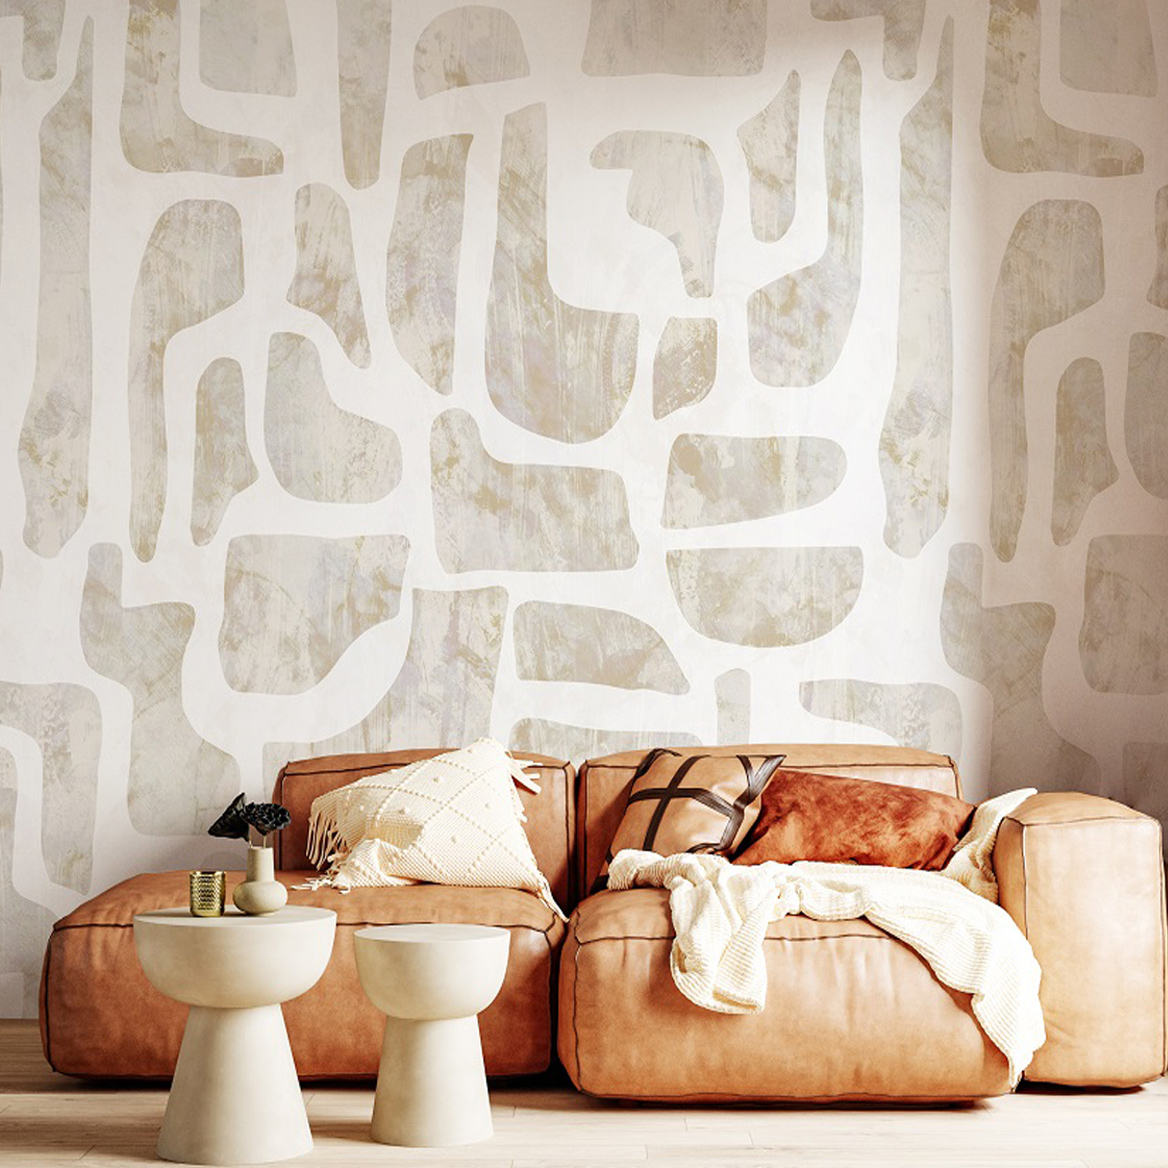 papiers peints contemporain scandinave beige abstract pierres auto adhesif design pre encolle intisse sur mesure traditionelle tendance mode chambre salon cuisine